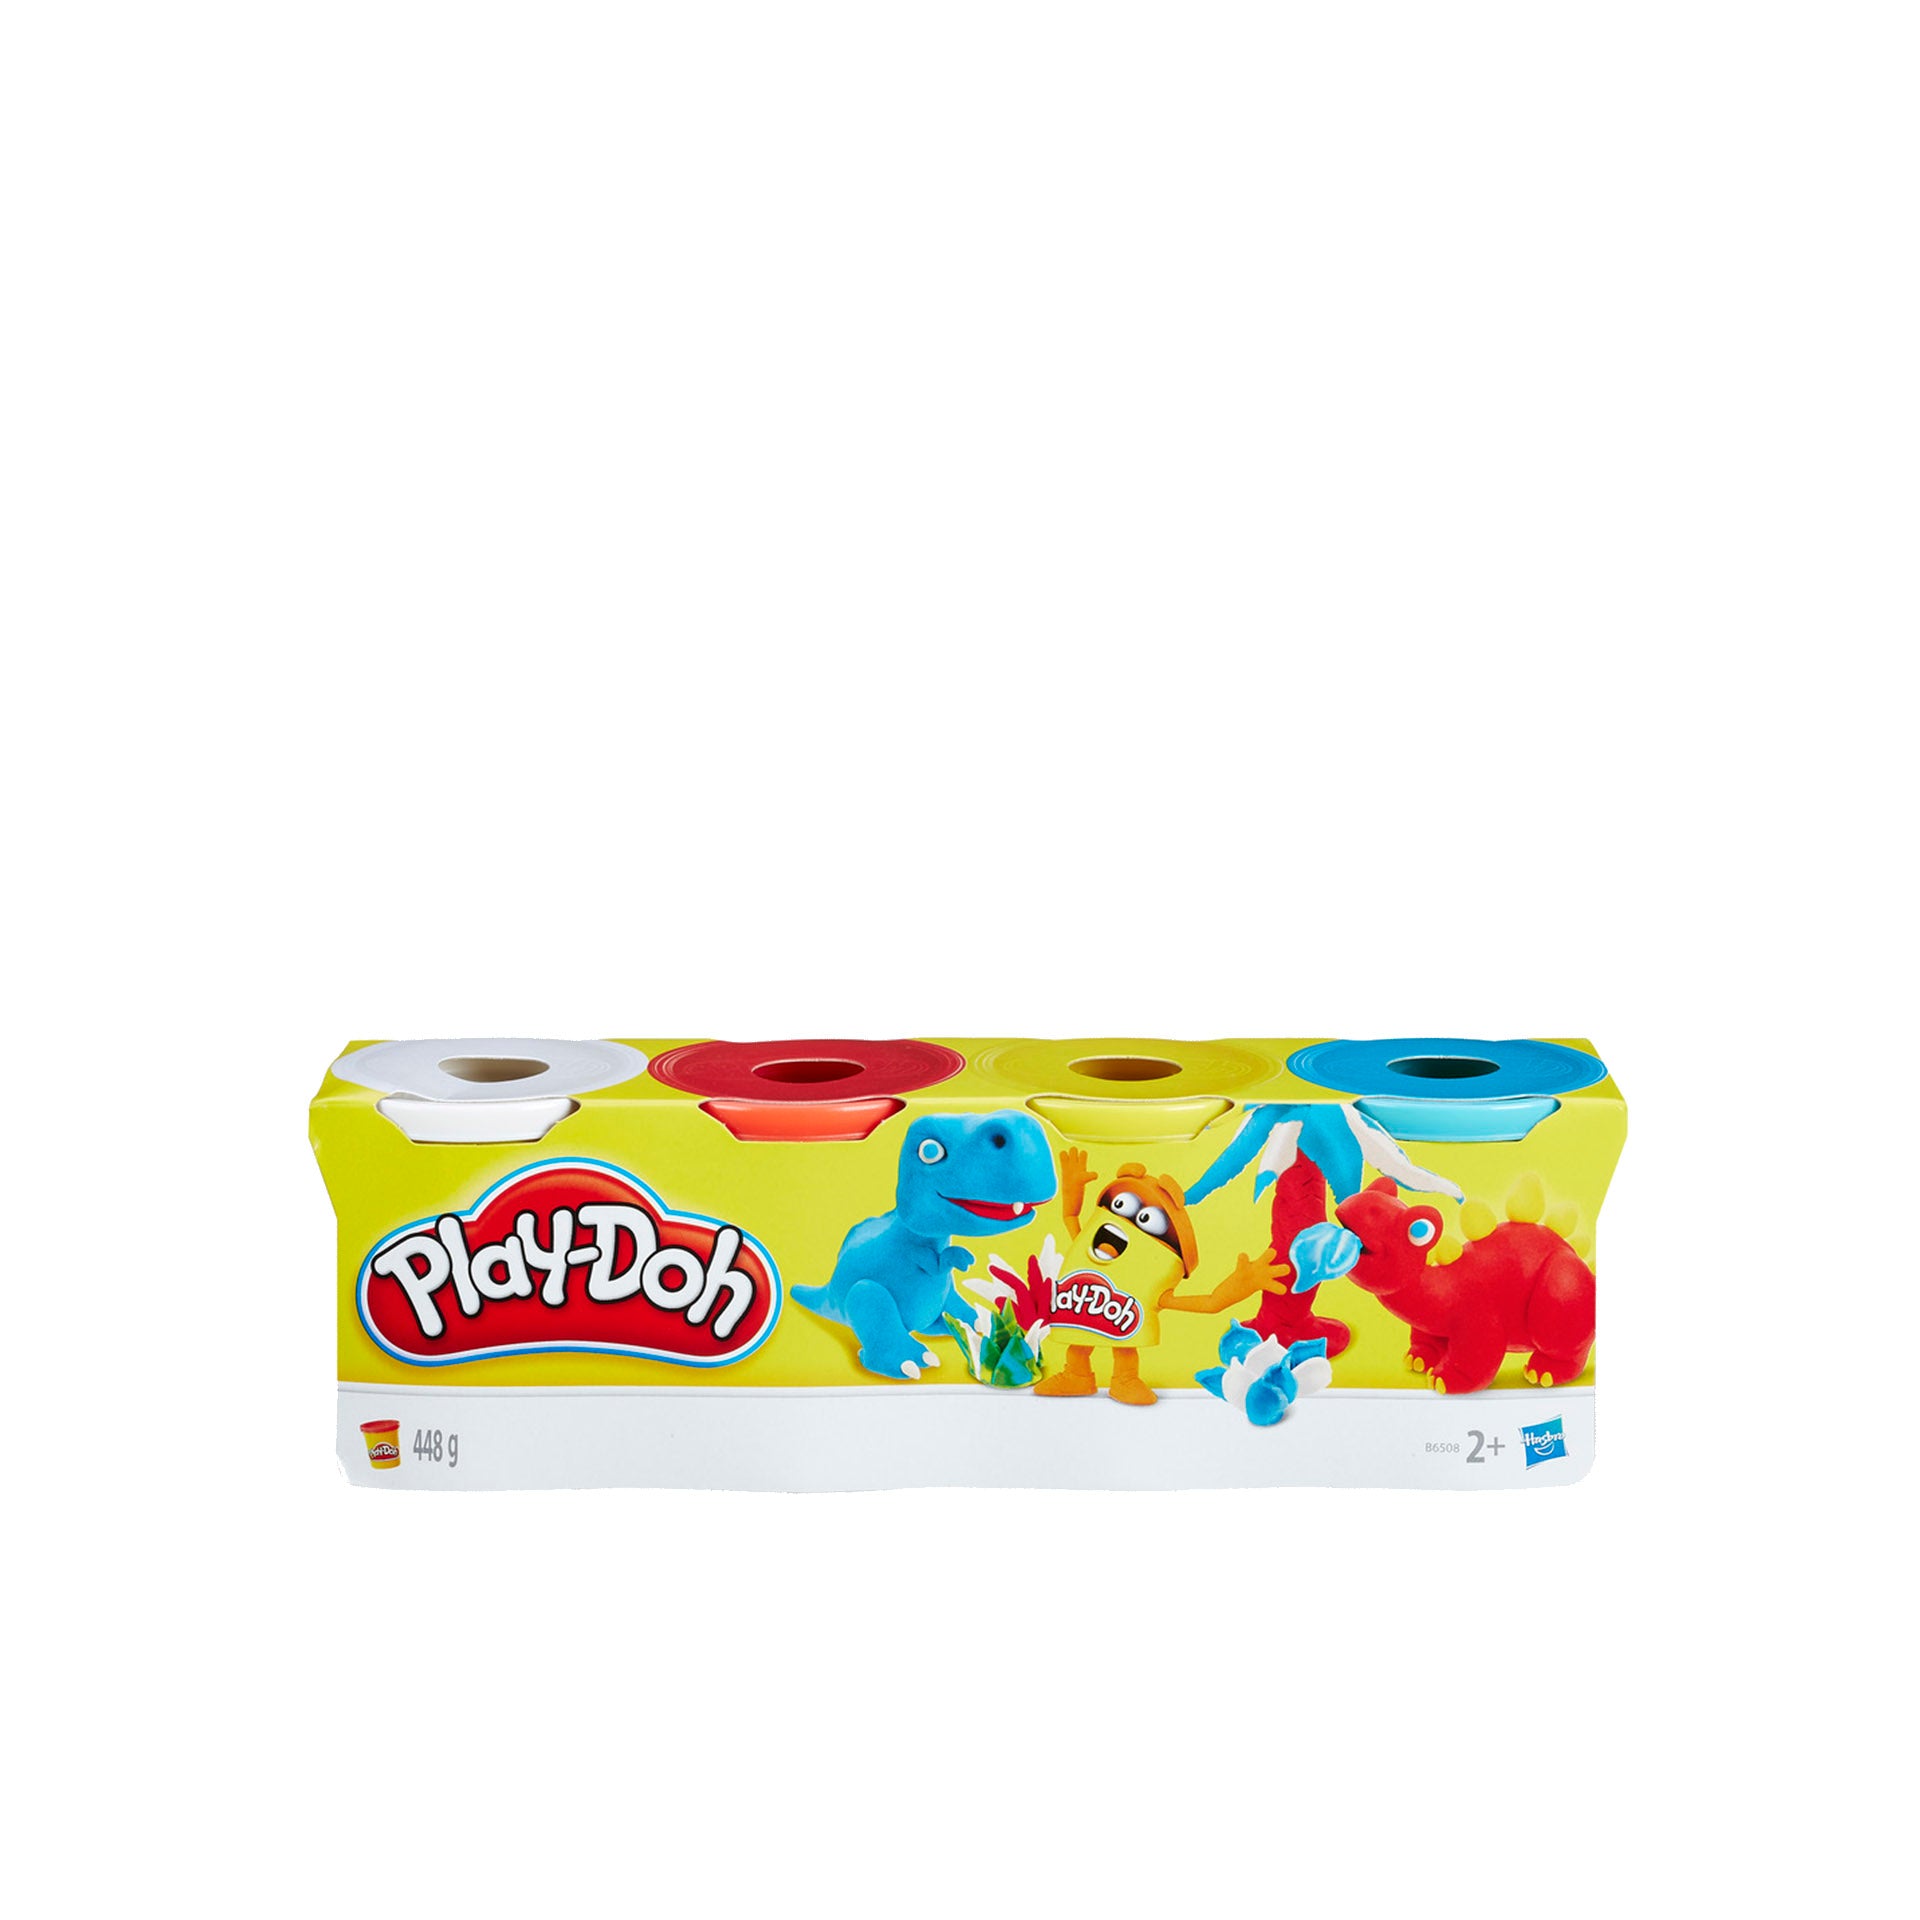 Play-Doh Plasticina 4 Potes Multicolor Sortido